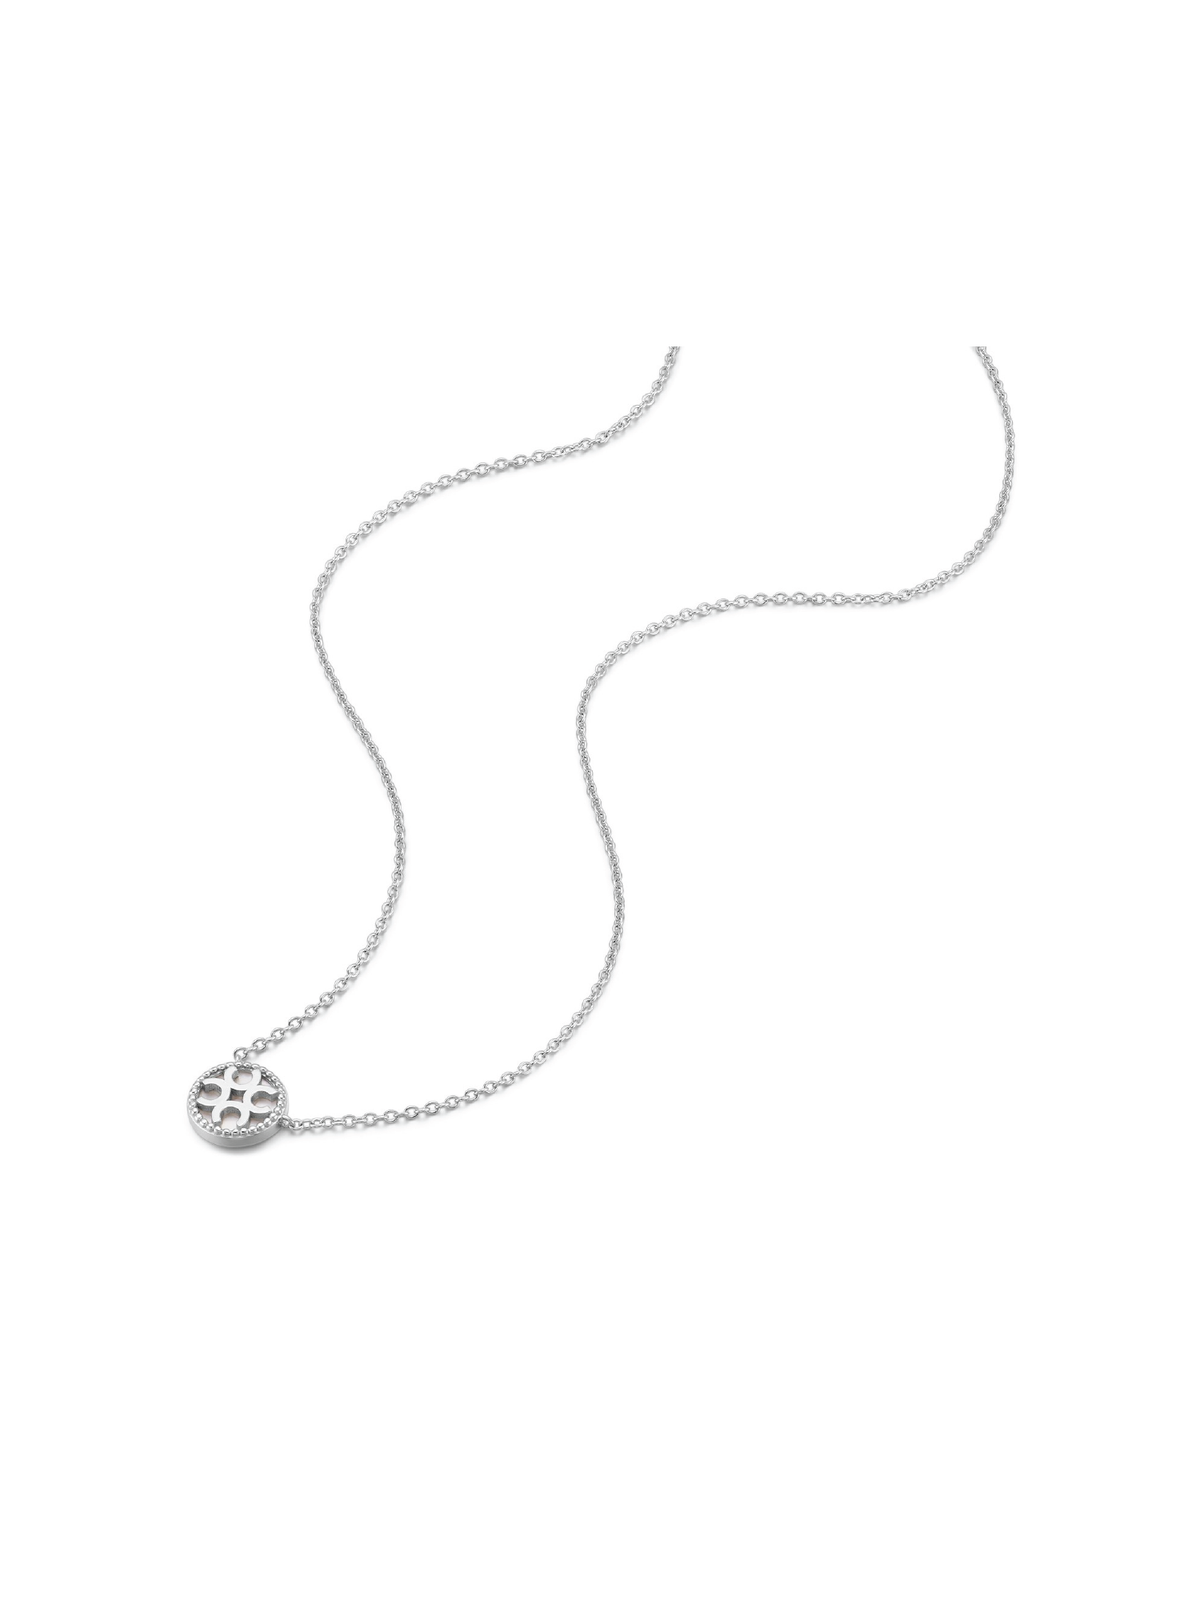 Signature Necklace - Ivory (White)